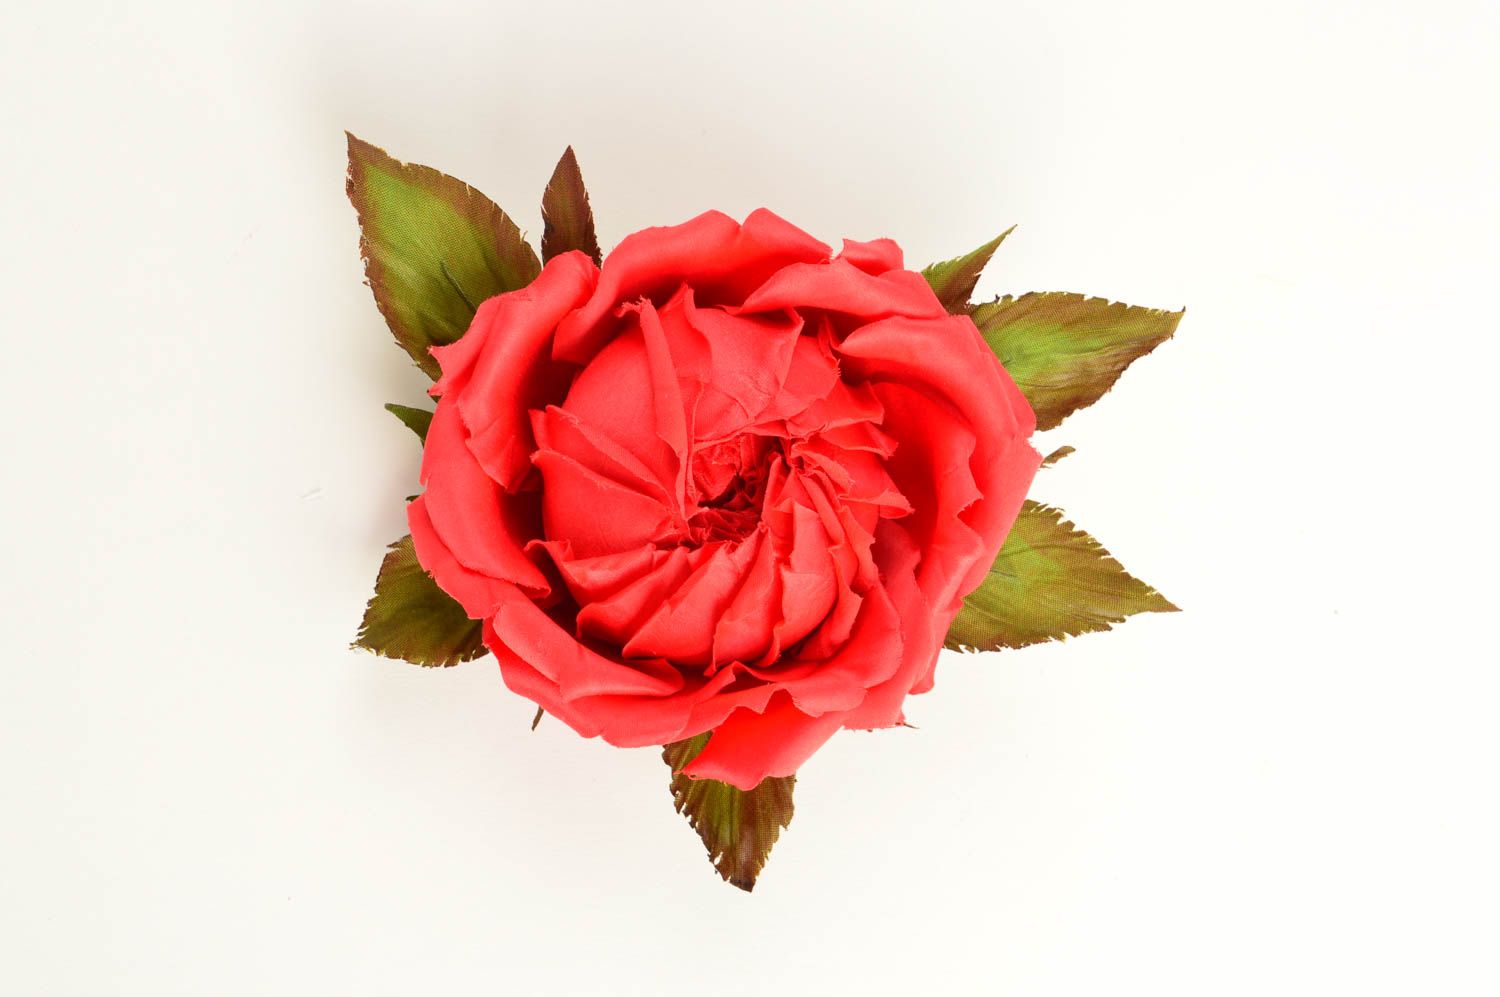 Брошь из шелка хэнд мэйд брошь-заколка красная роза авторская бижутерия фото 3